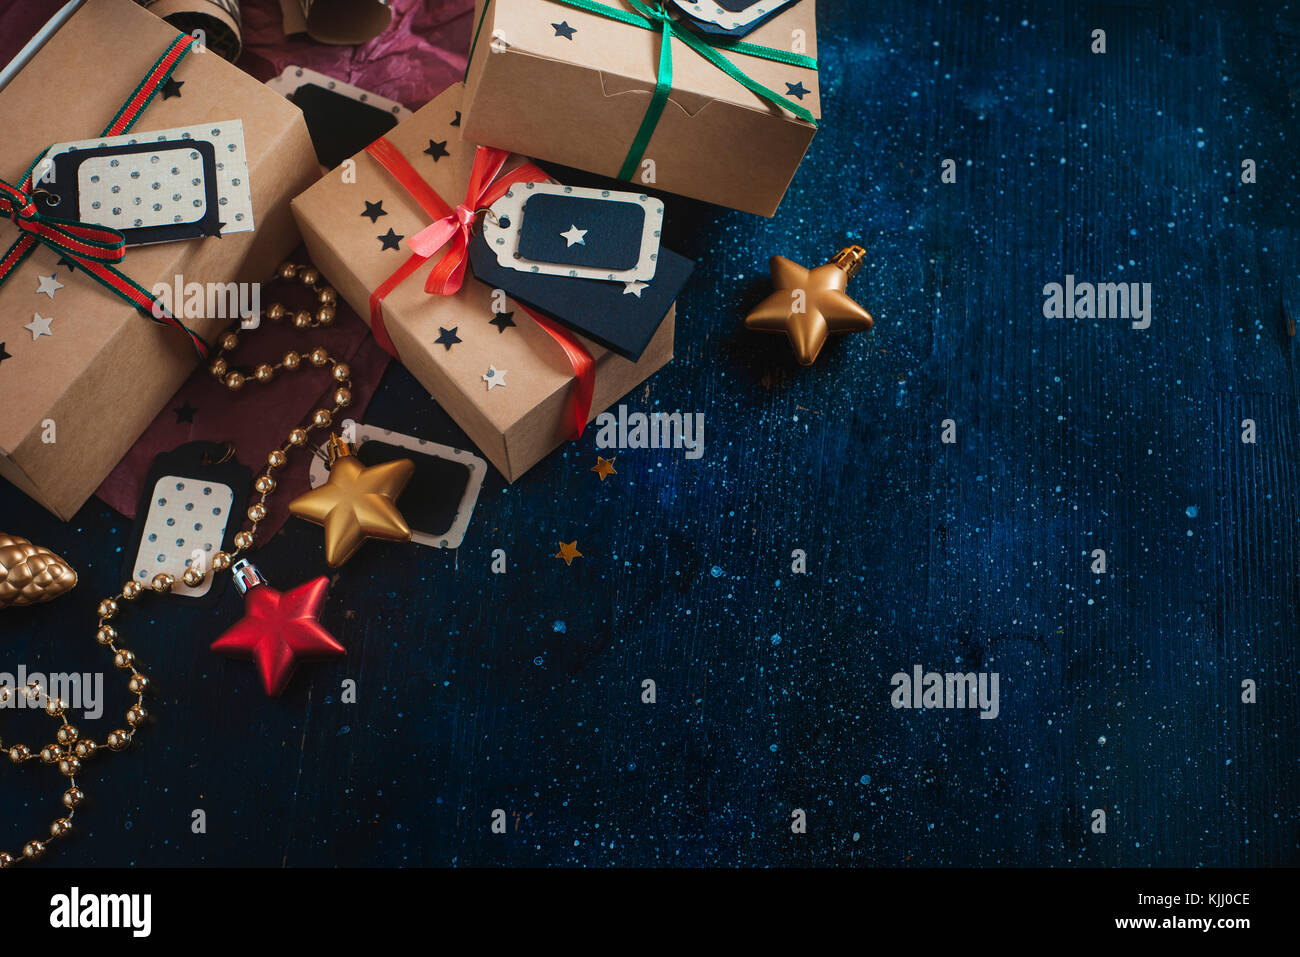 Décorations et gifts concept. fête de Noël dark flat fixer avec des boîtes en papier craft, étoiles, tags, de guirlandes et de copier l'espace sur une sombre w Banque D'Images